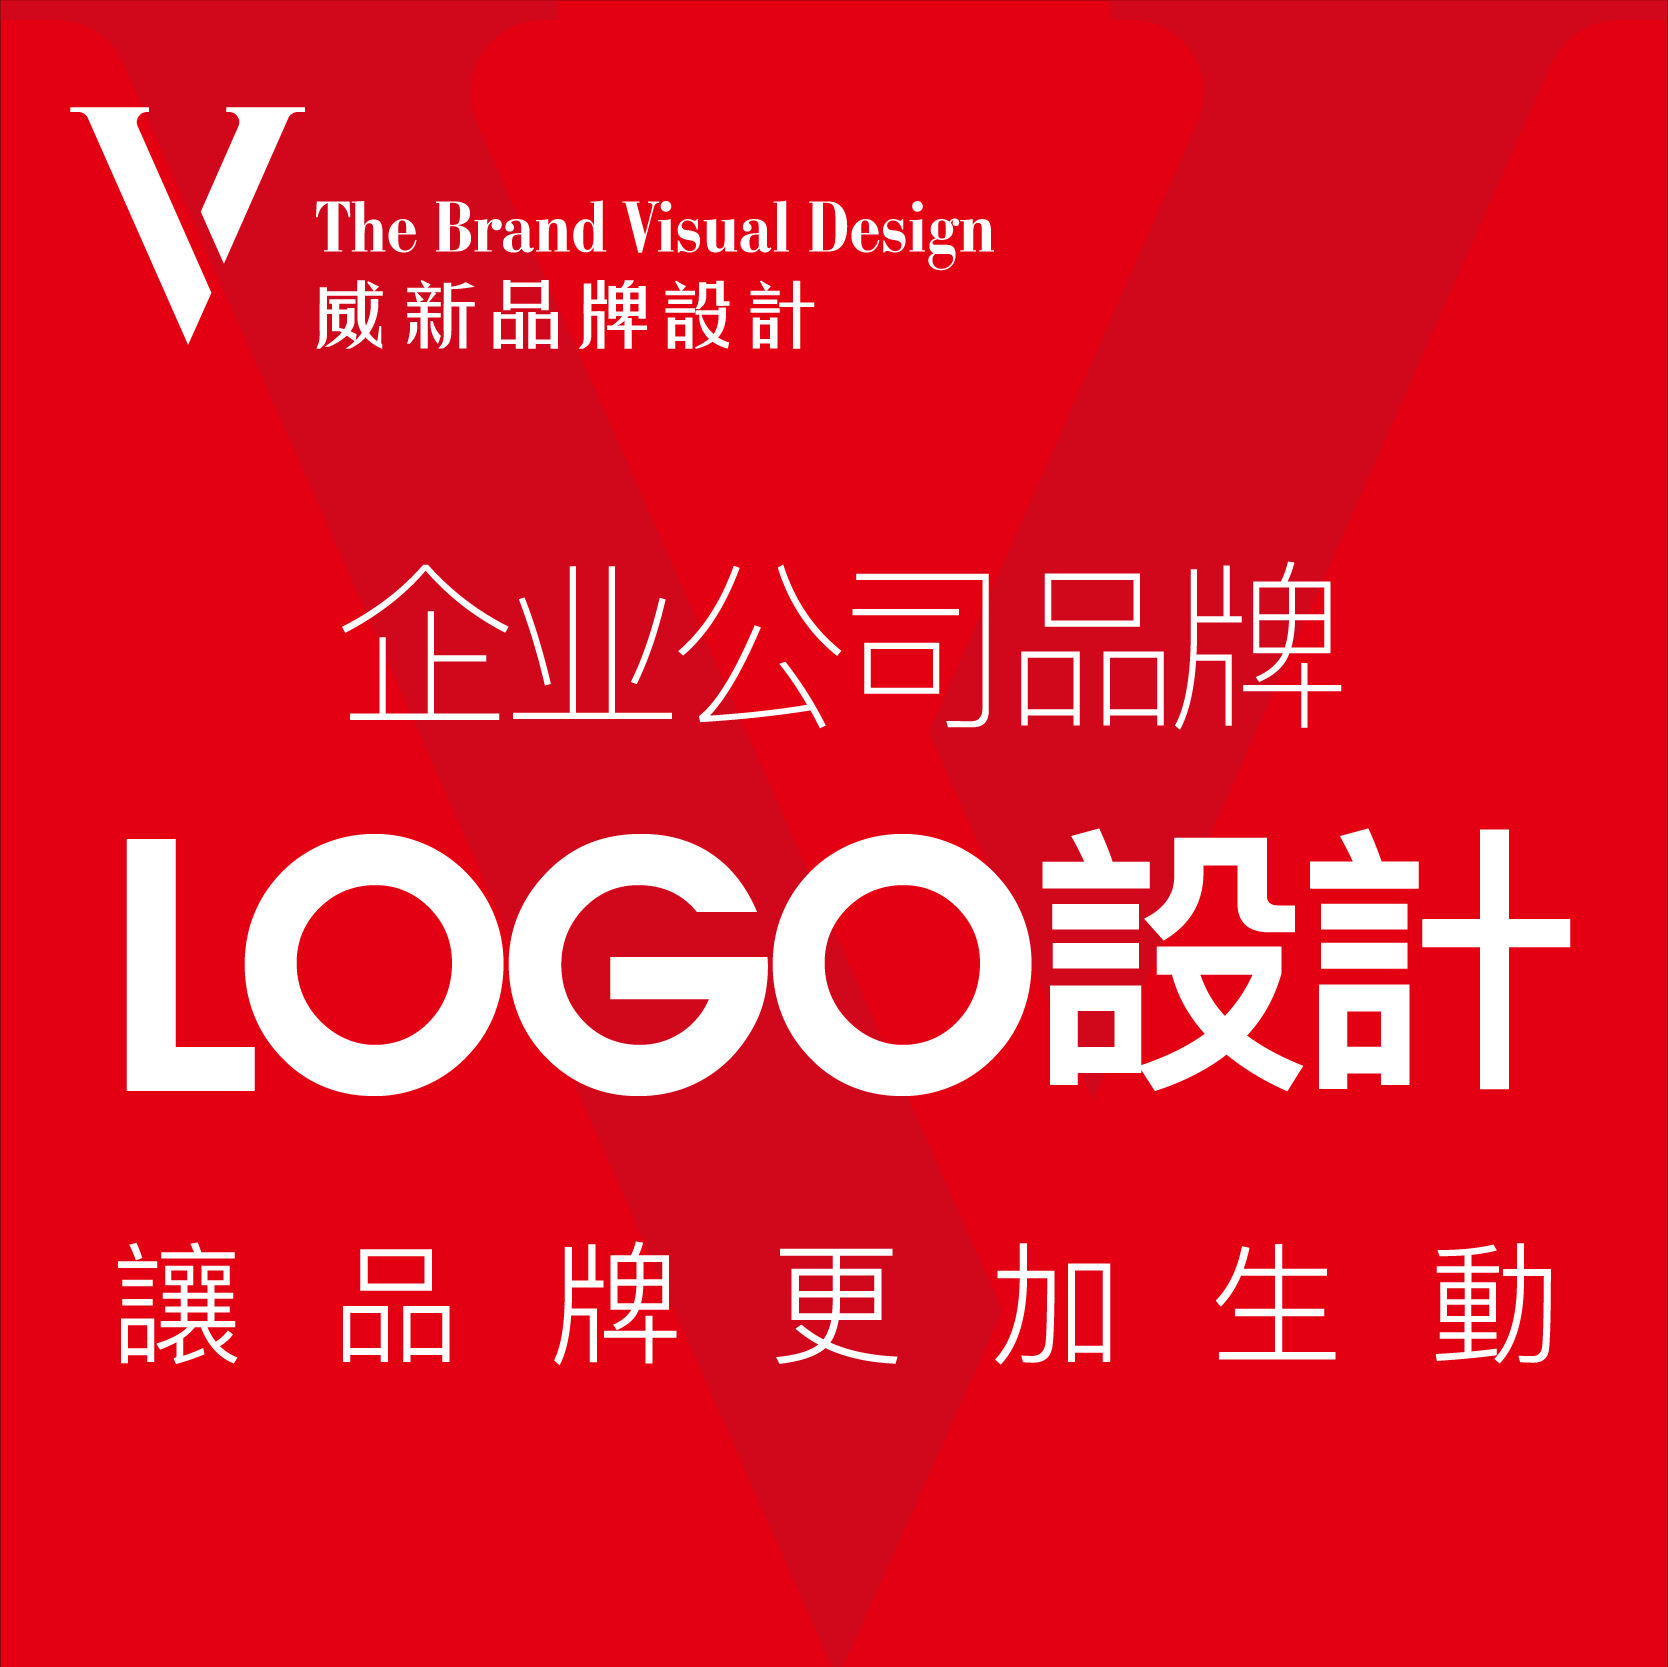 企业公司品牌logo设计图文标志商标门头字体图标设计